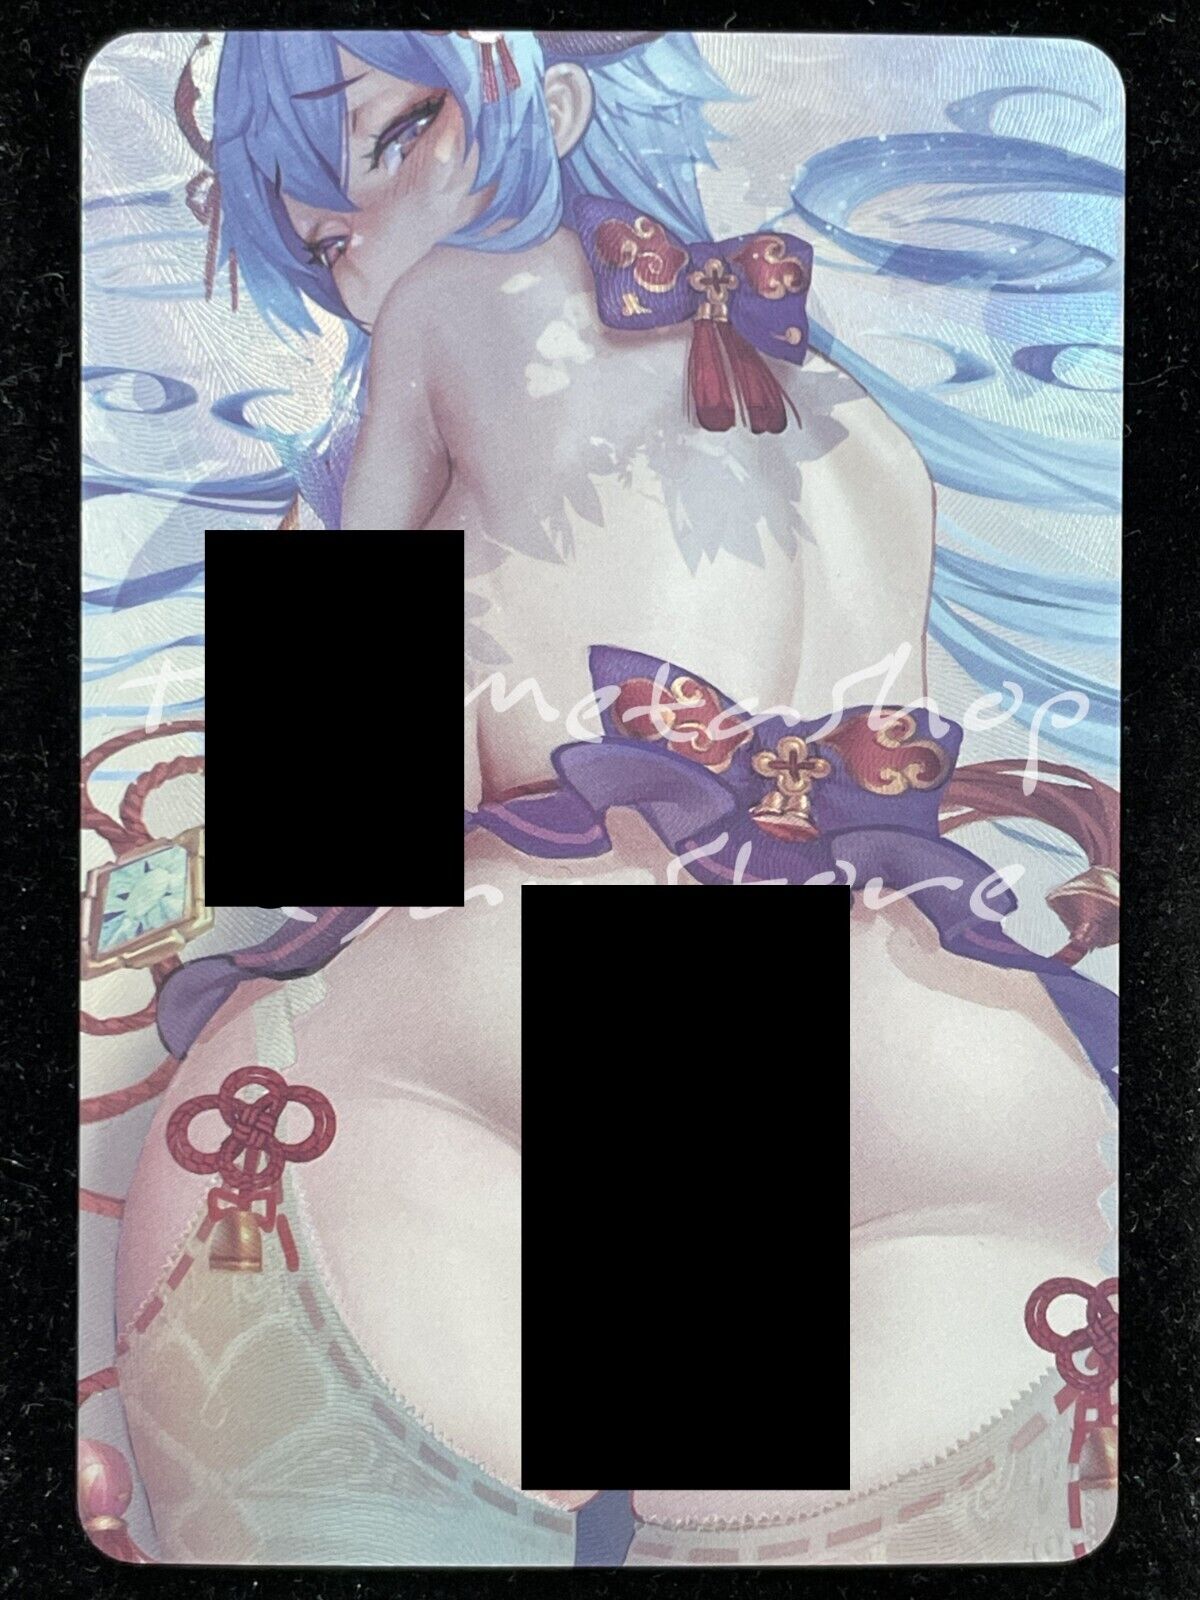 🔥 Ganyu Genshin Impact Goddess Story Anime Waifu Doujin Card ACG DUAL 188-1 🔥